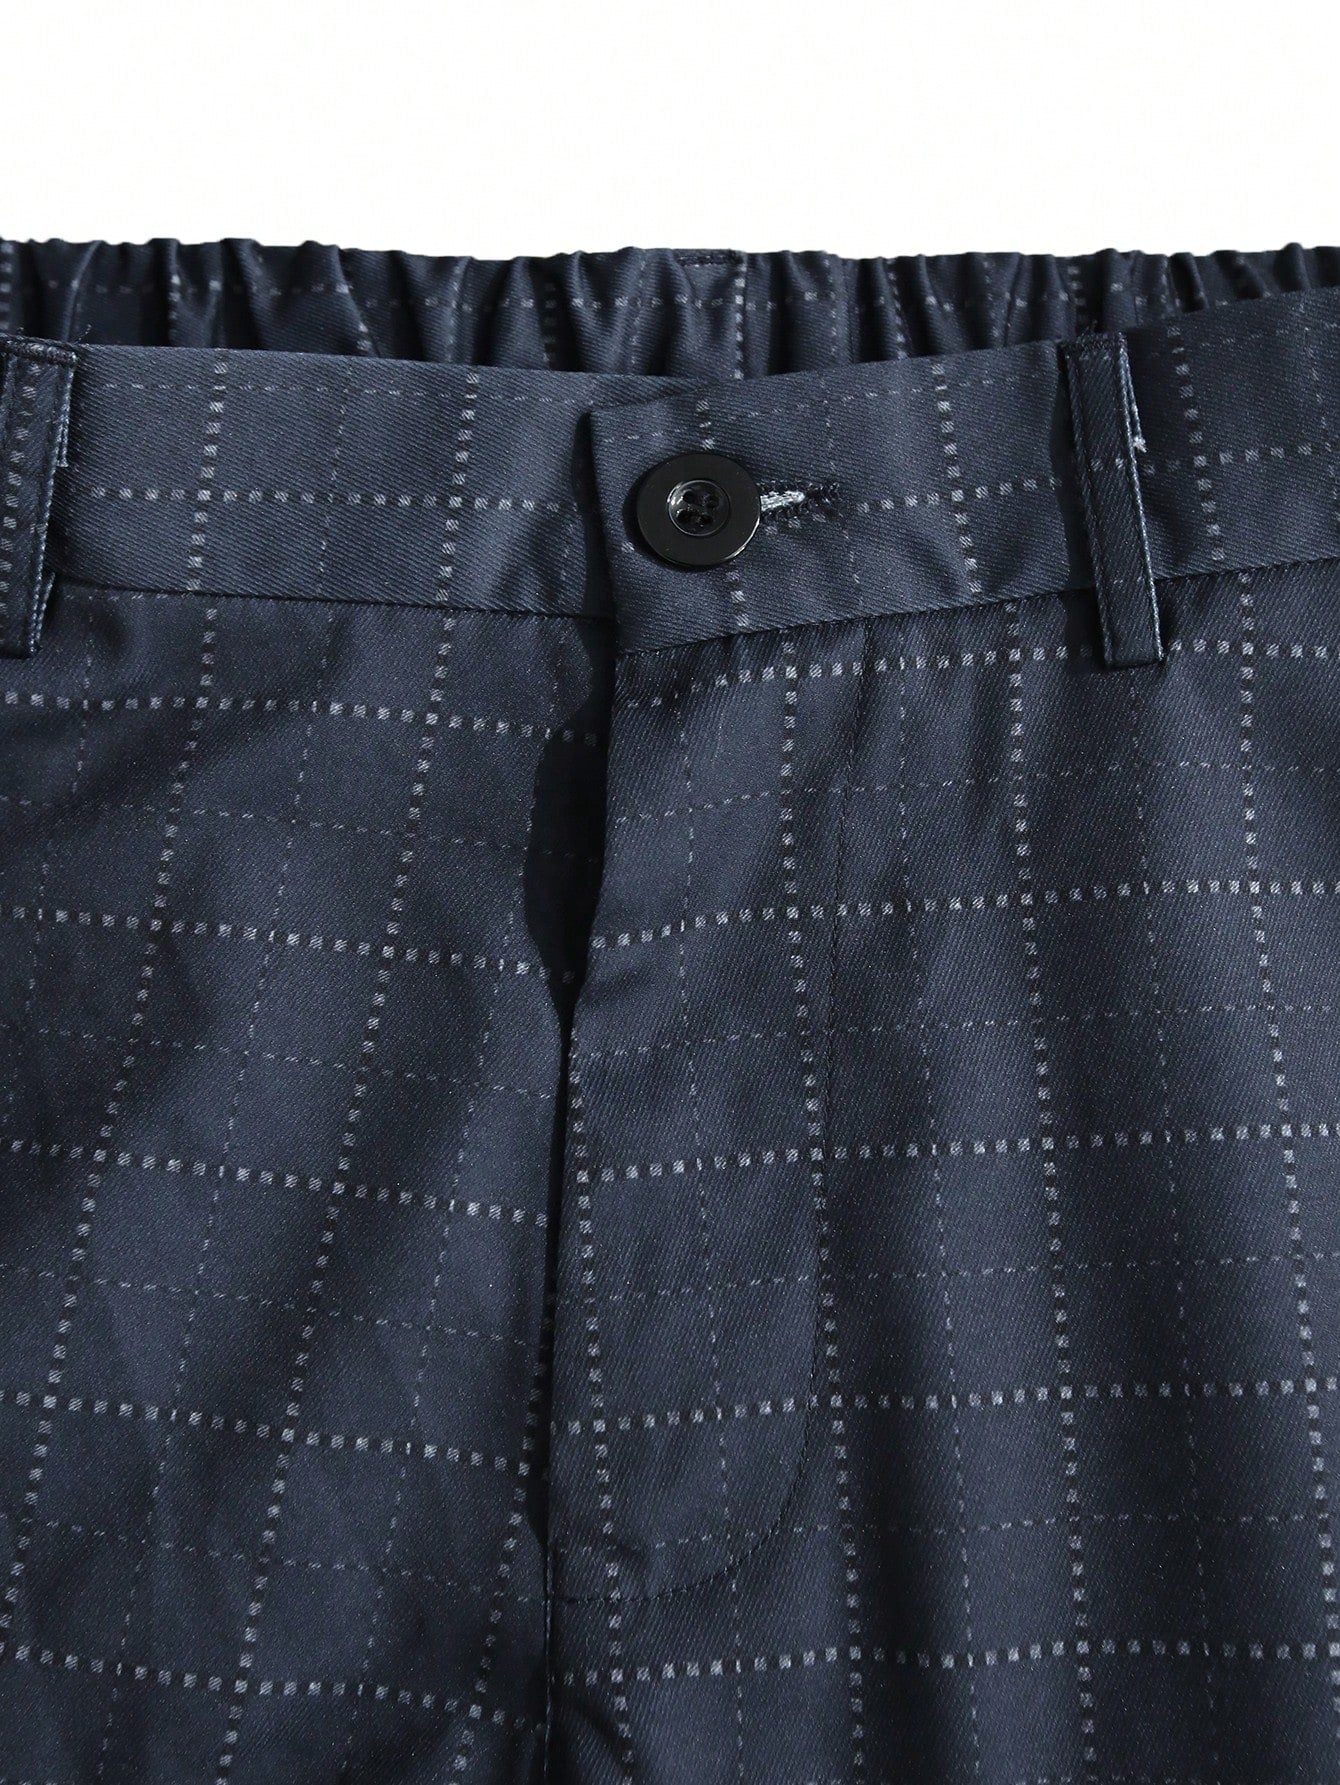 Manfinity Mode Men's Plaid Suit Pants